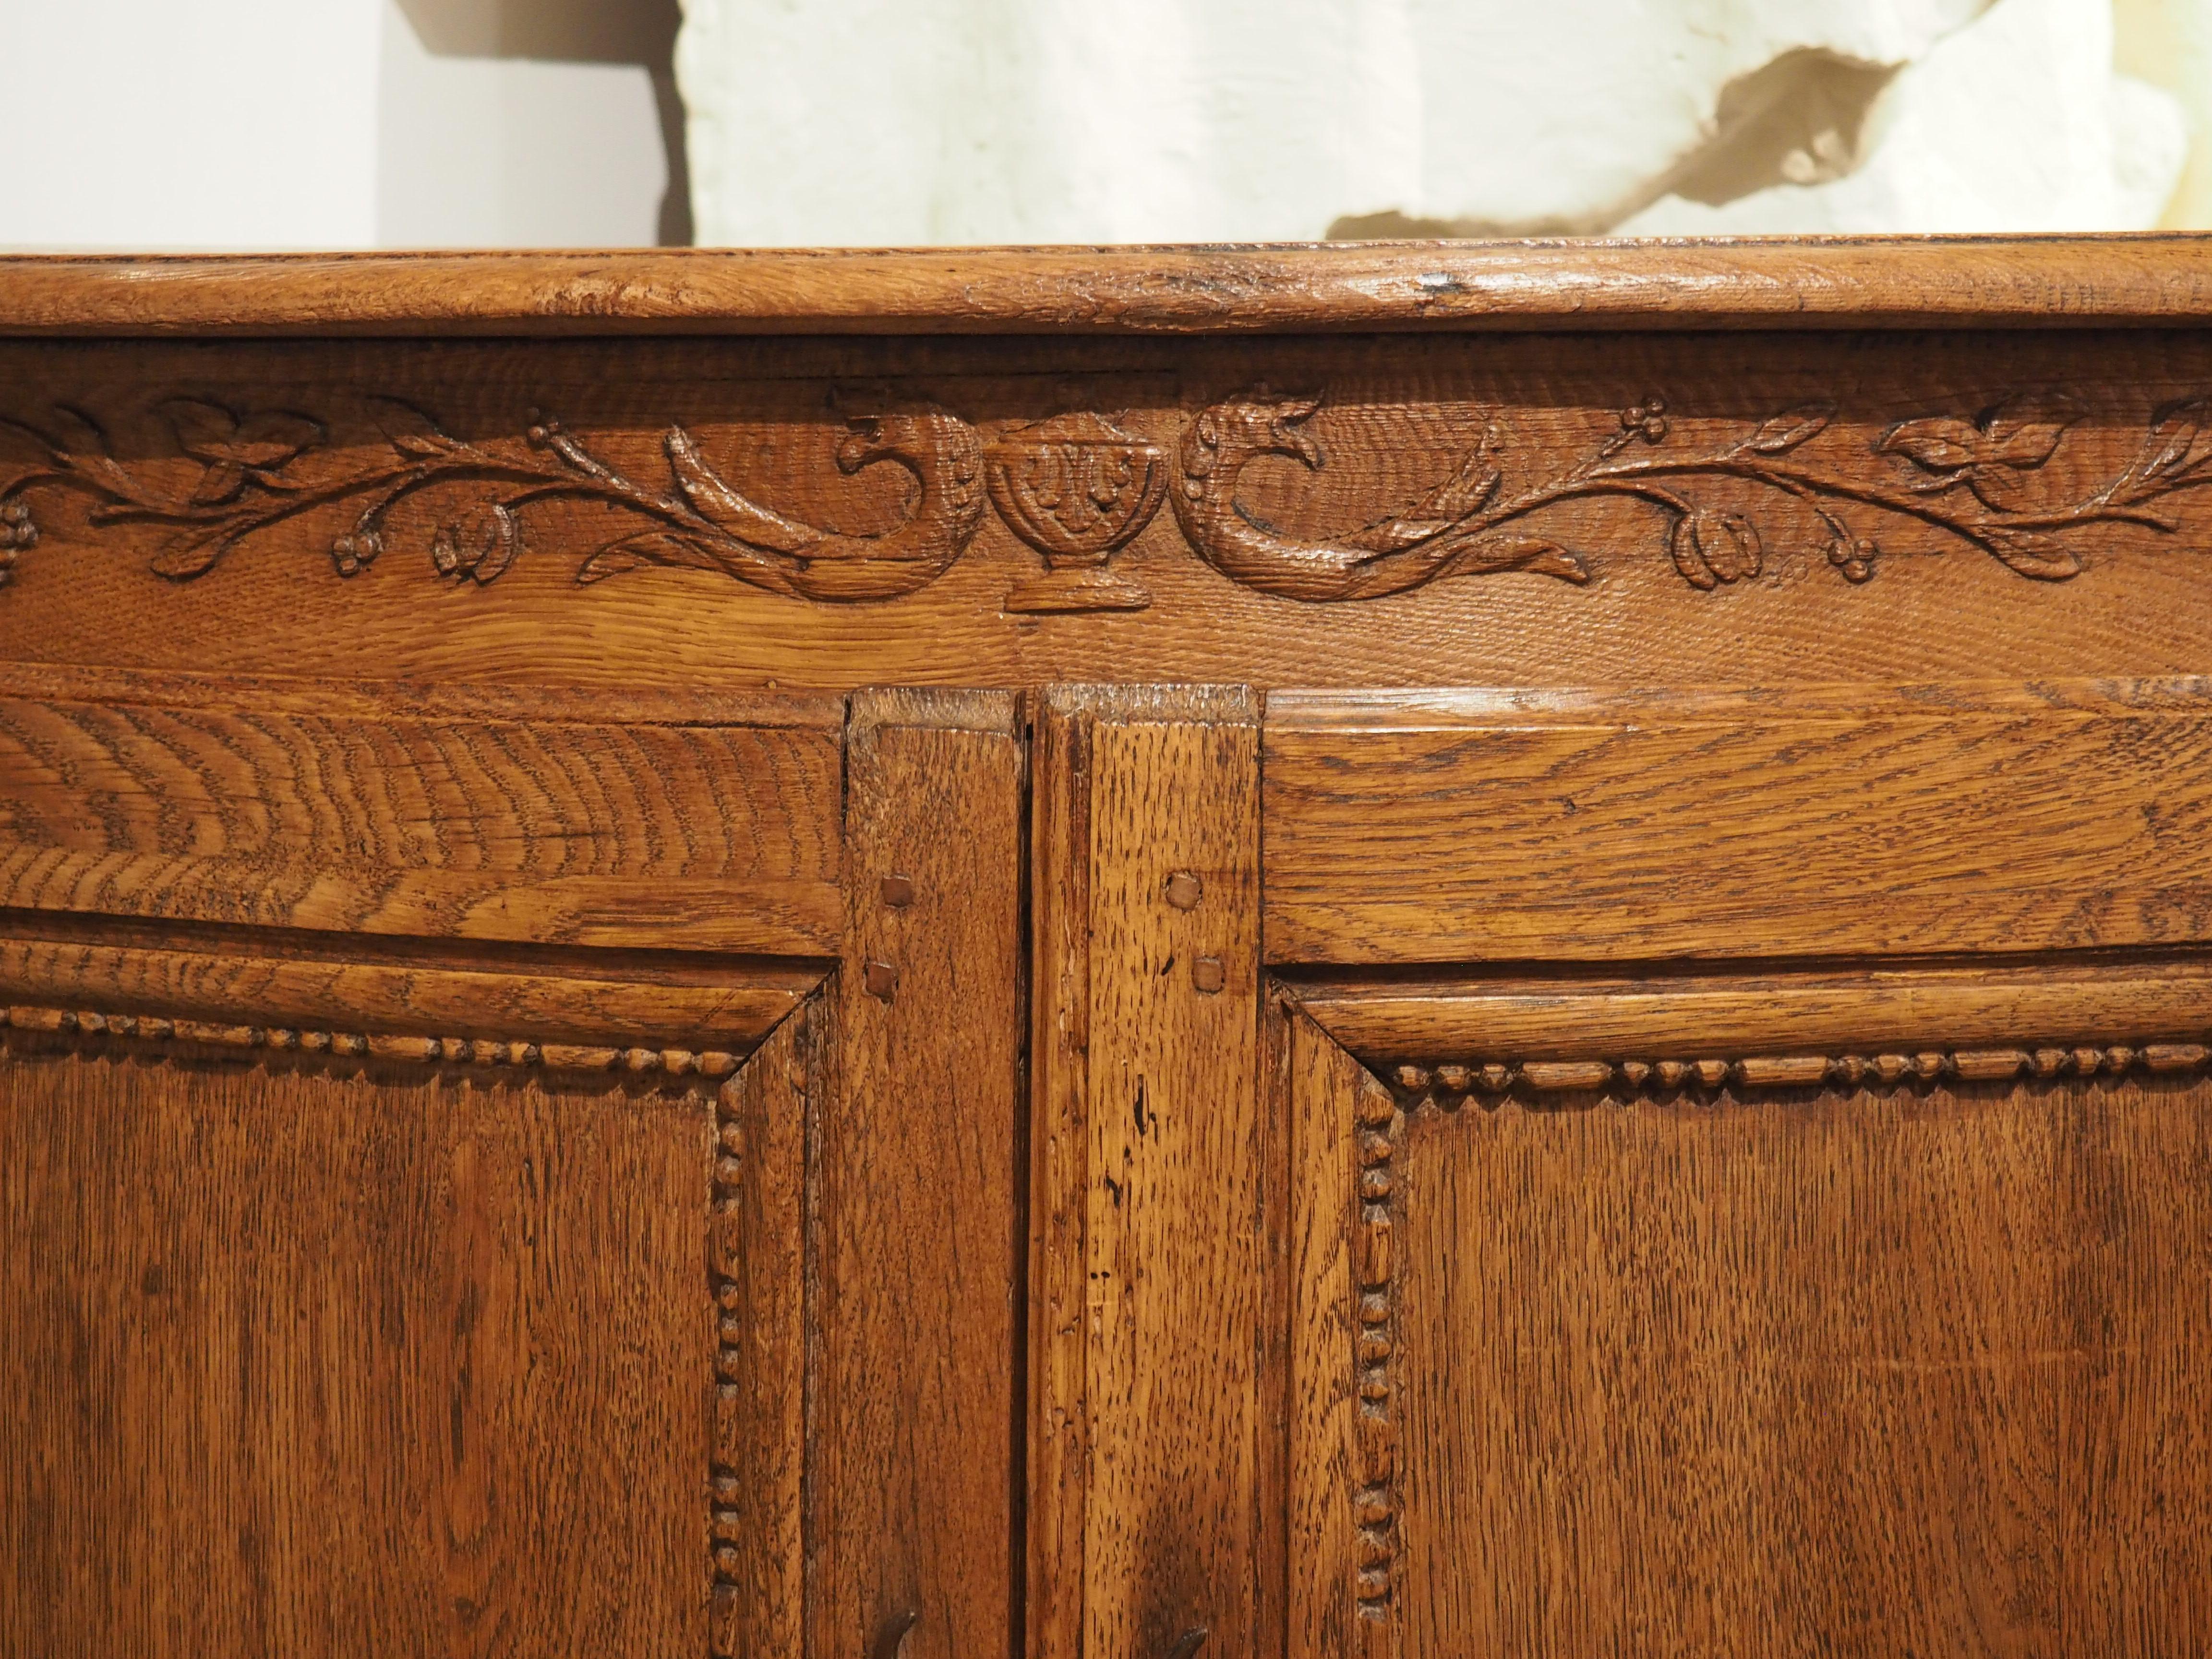 Bringen Sie mit diesem exquisiten französischen Eckschrank aus dem 18. Jahrhundert einen eleganten Touch in Ihr Zuhause. Das sorgfältig aus Eichen- und Obstholz gefertigte Möbelstück verfügt über ein keilförmiges Innenfach, das mit zarten